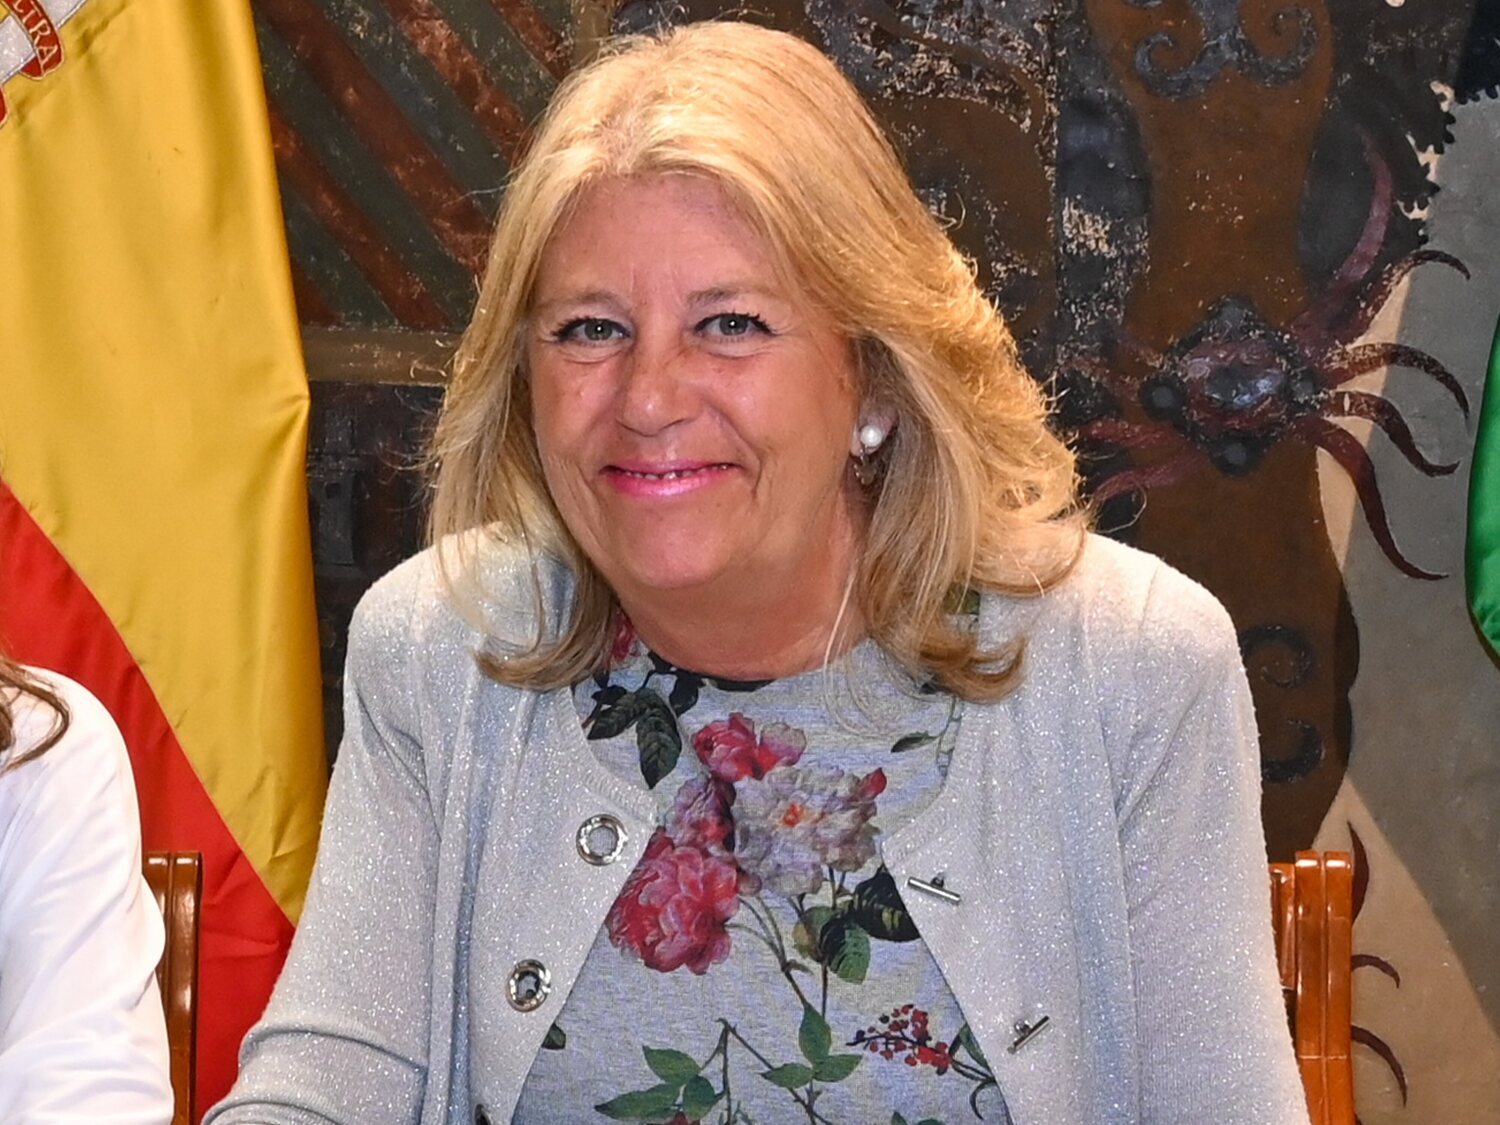 Antidroga indica que el esposo de la alcaldesa de Marbella ayudó a blanquear 7 millones